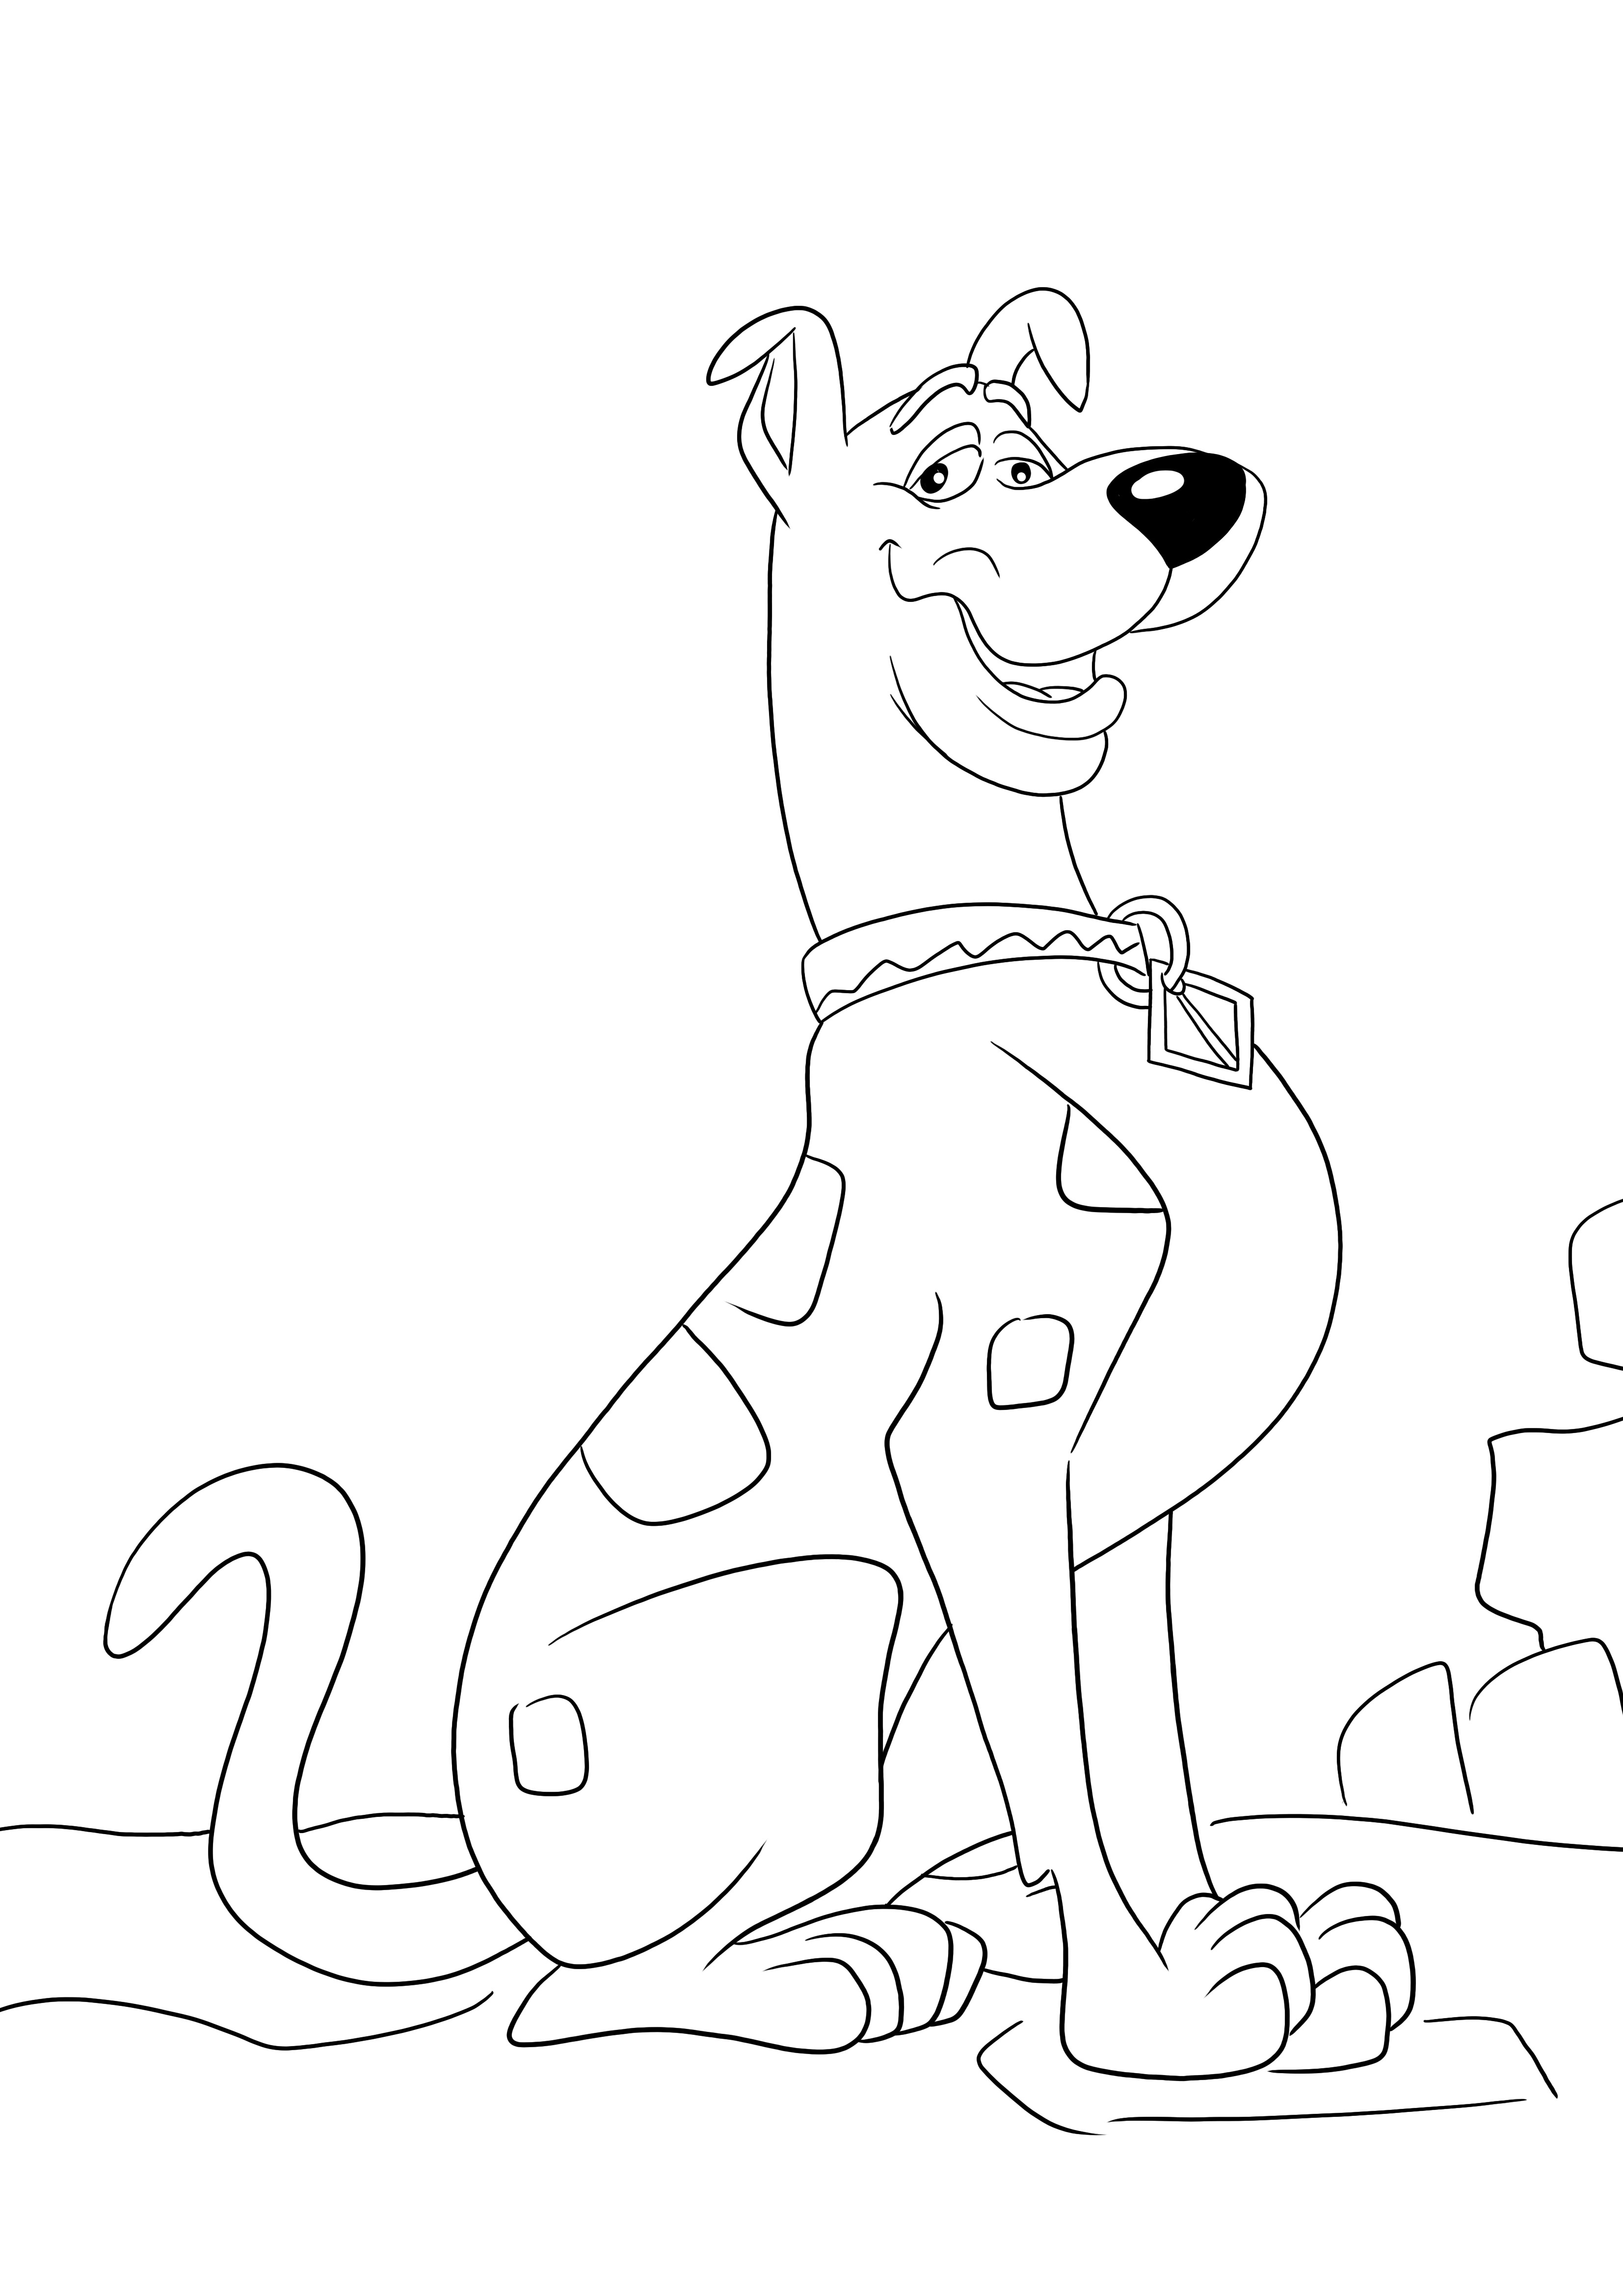 Aqui está uma imagem para colorir gratuita do sorrateiro Scooby Doo para imprimir e colorir facilmente